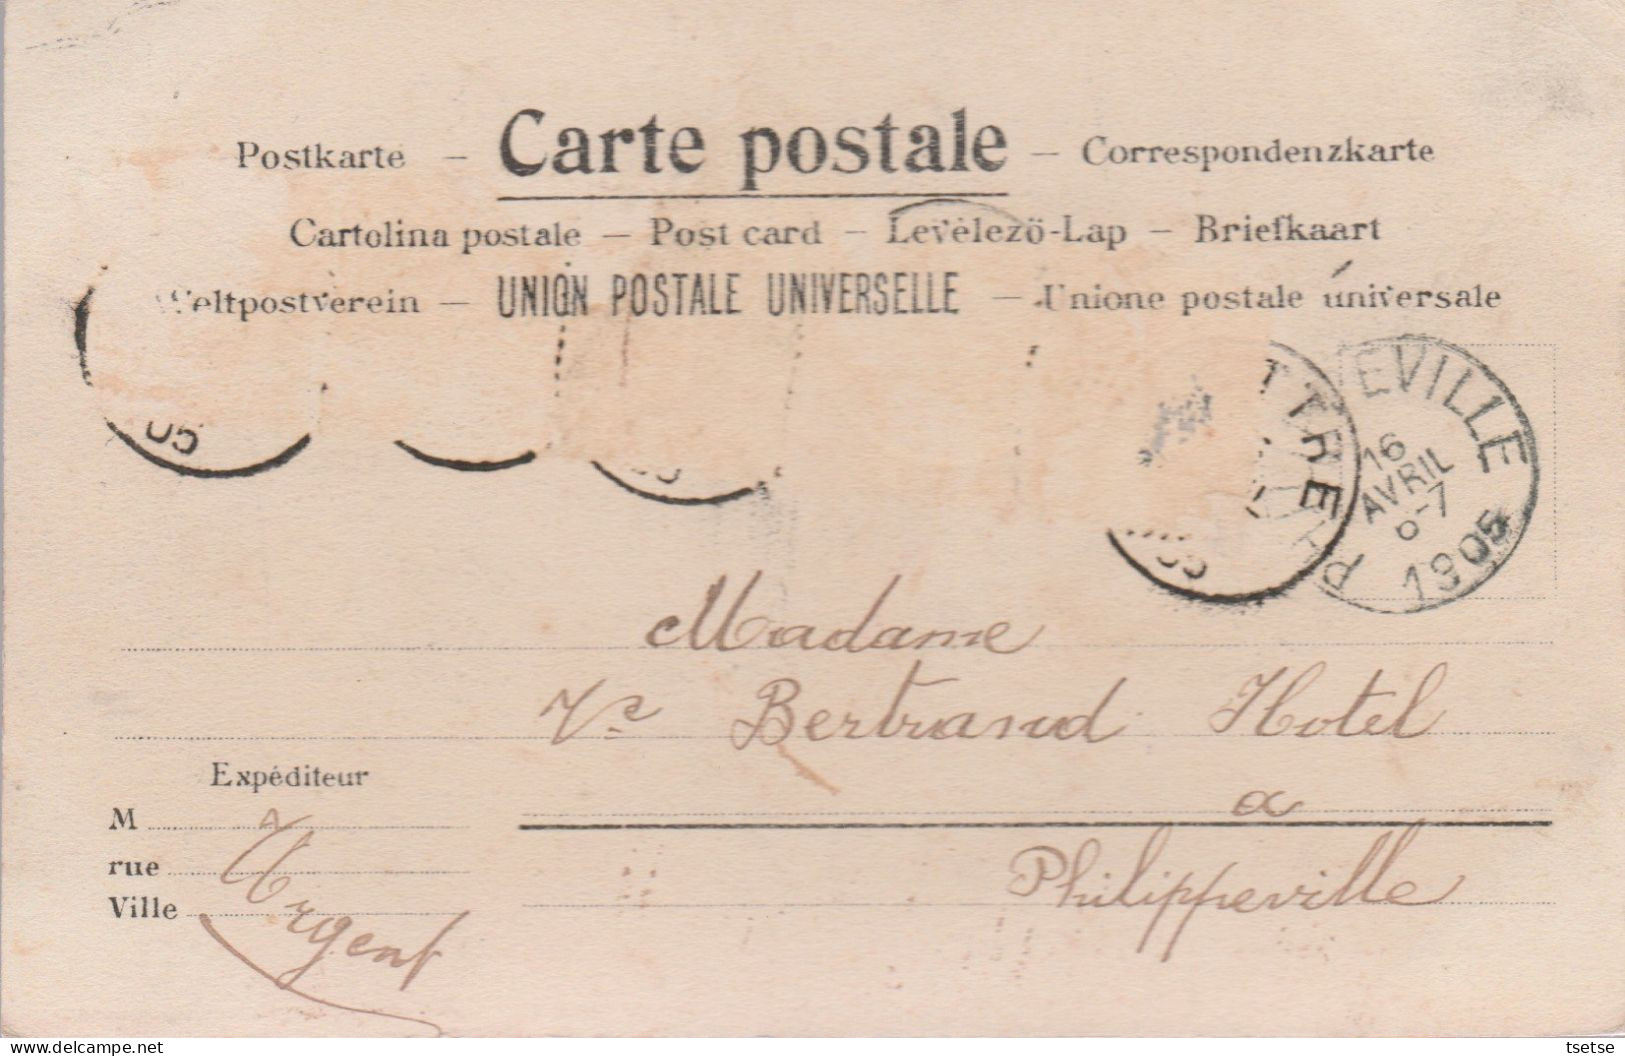 Luttre - L'Arsenal ... Matériel Ferroviaire, Loco Vapeur - 1905 ( Voir Verso ) - Pont-à-Celles